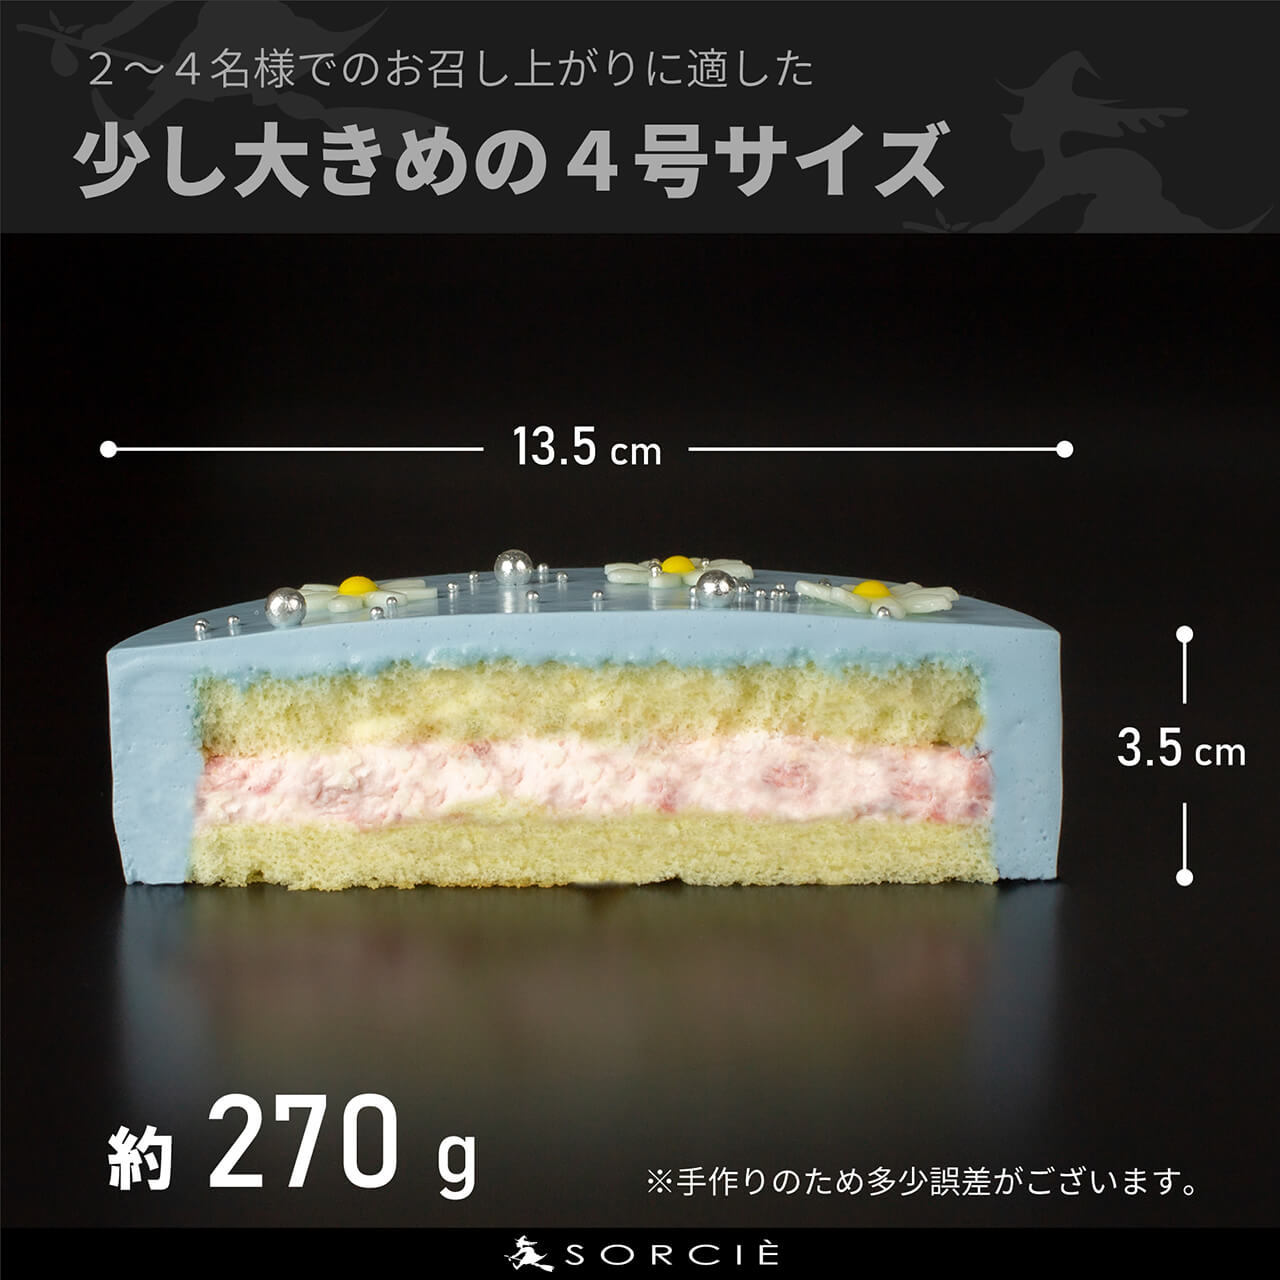 【店舗受取】センイルケーキ 4号サイズ 13.5cm 2人～4人分 約270g 【天然色素のみ使用】